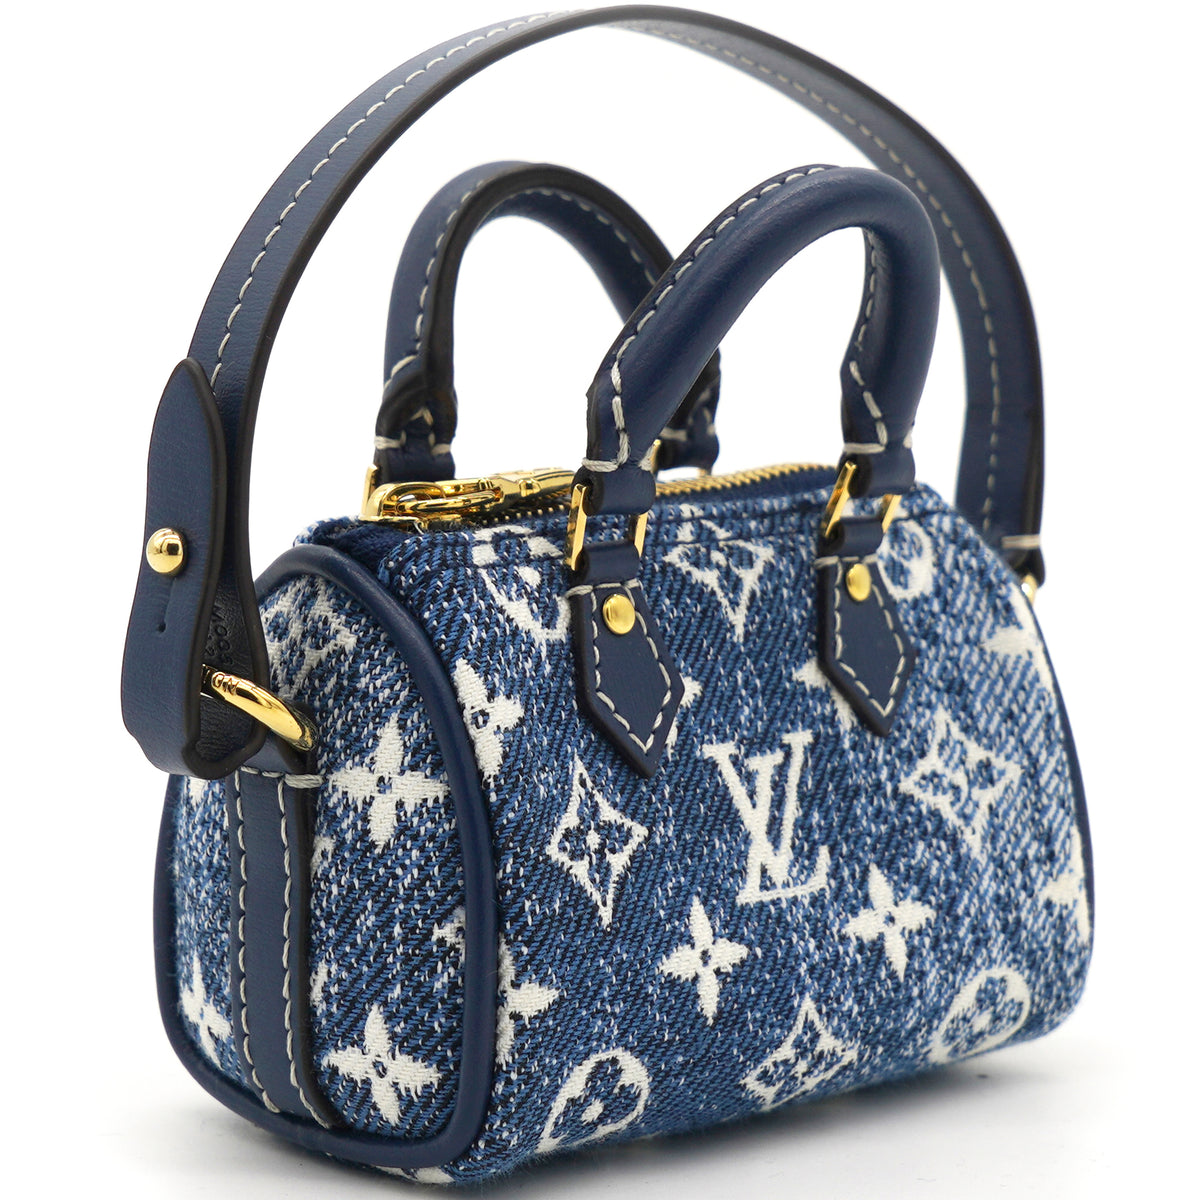 Louis Vuitton Micro speedy denim bag charm (M00546)